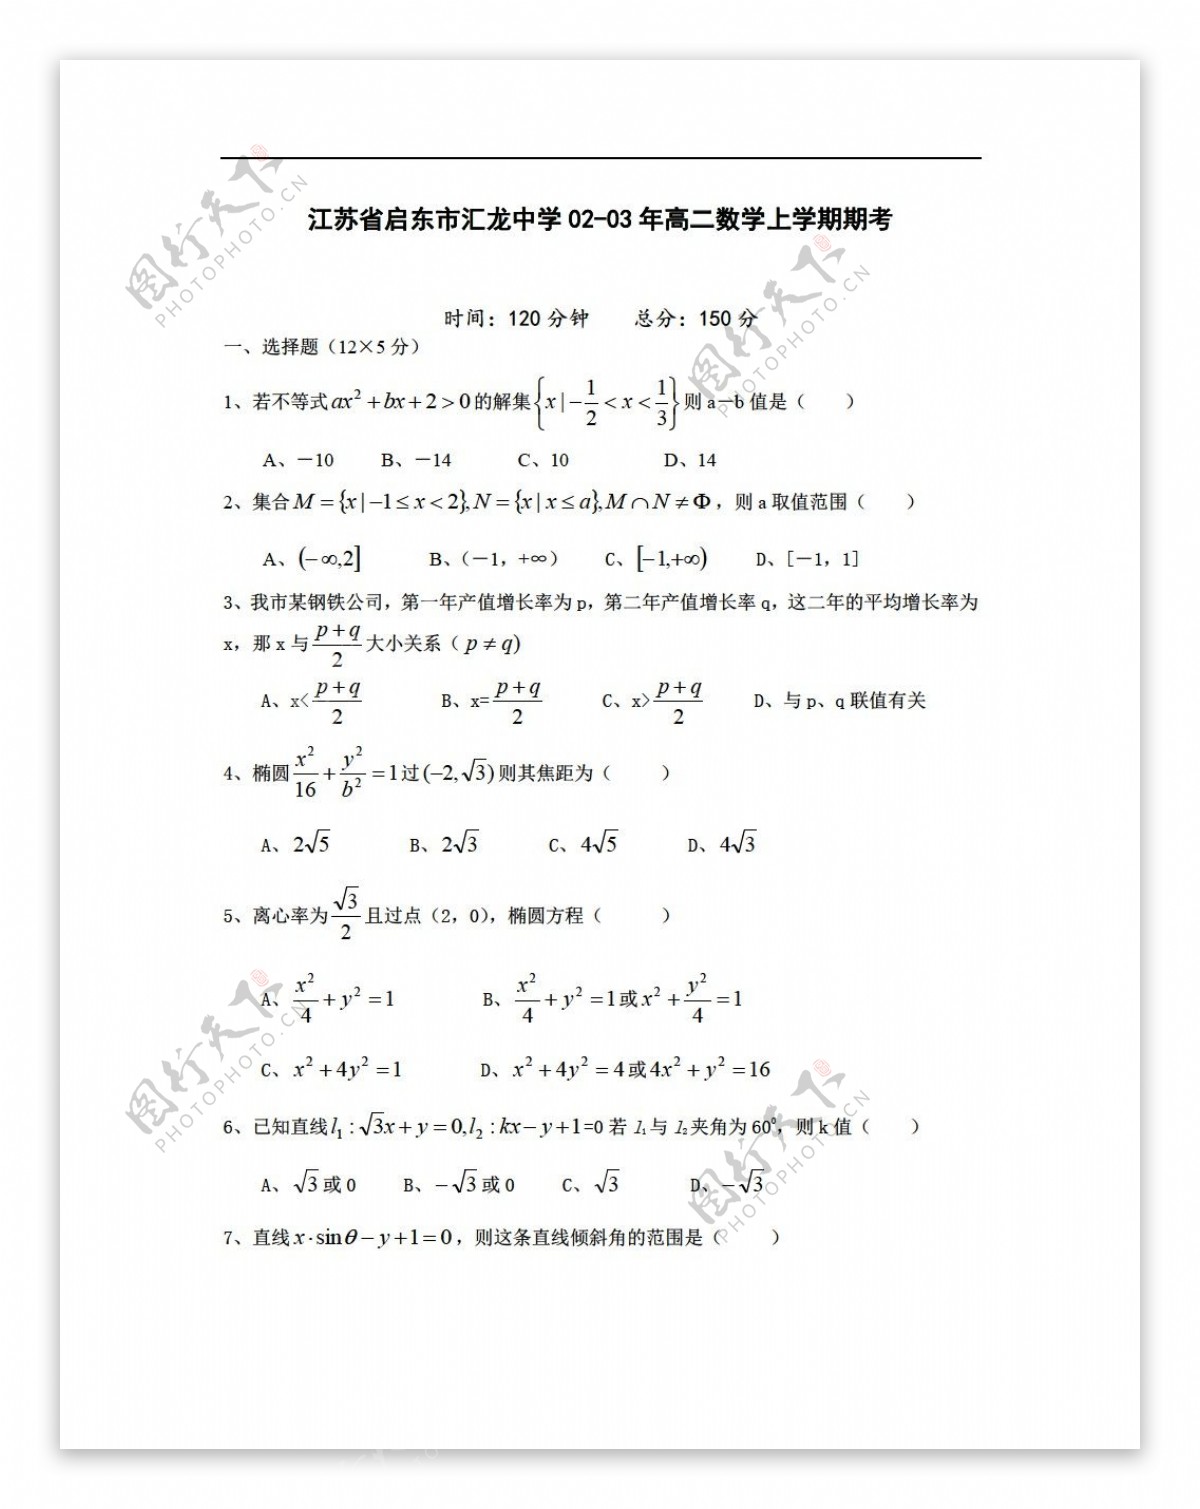 数学人教版江苏省启东市汇龙中学0203年上学期期考